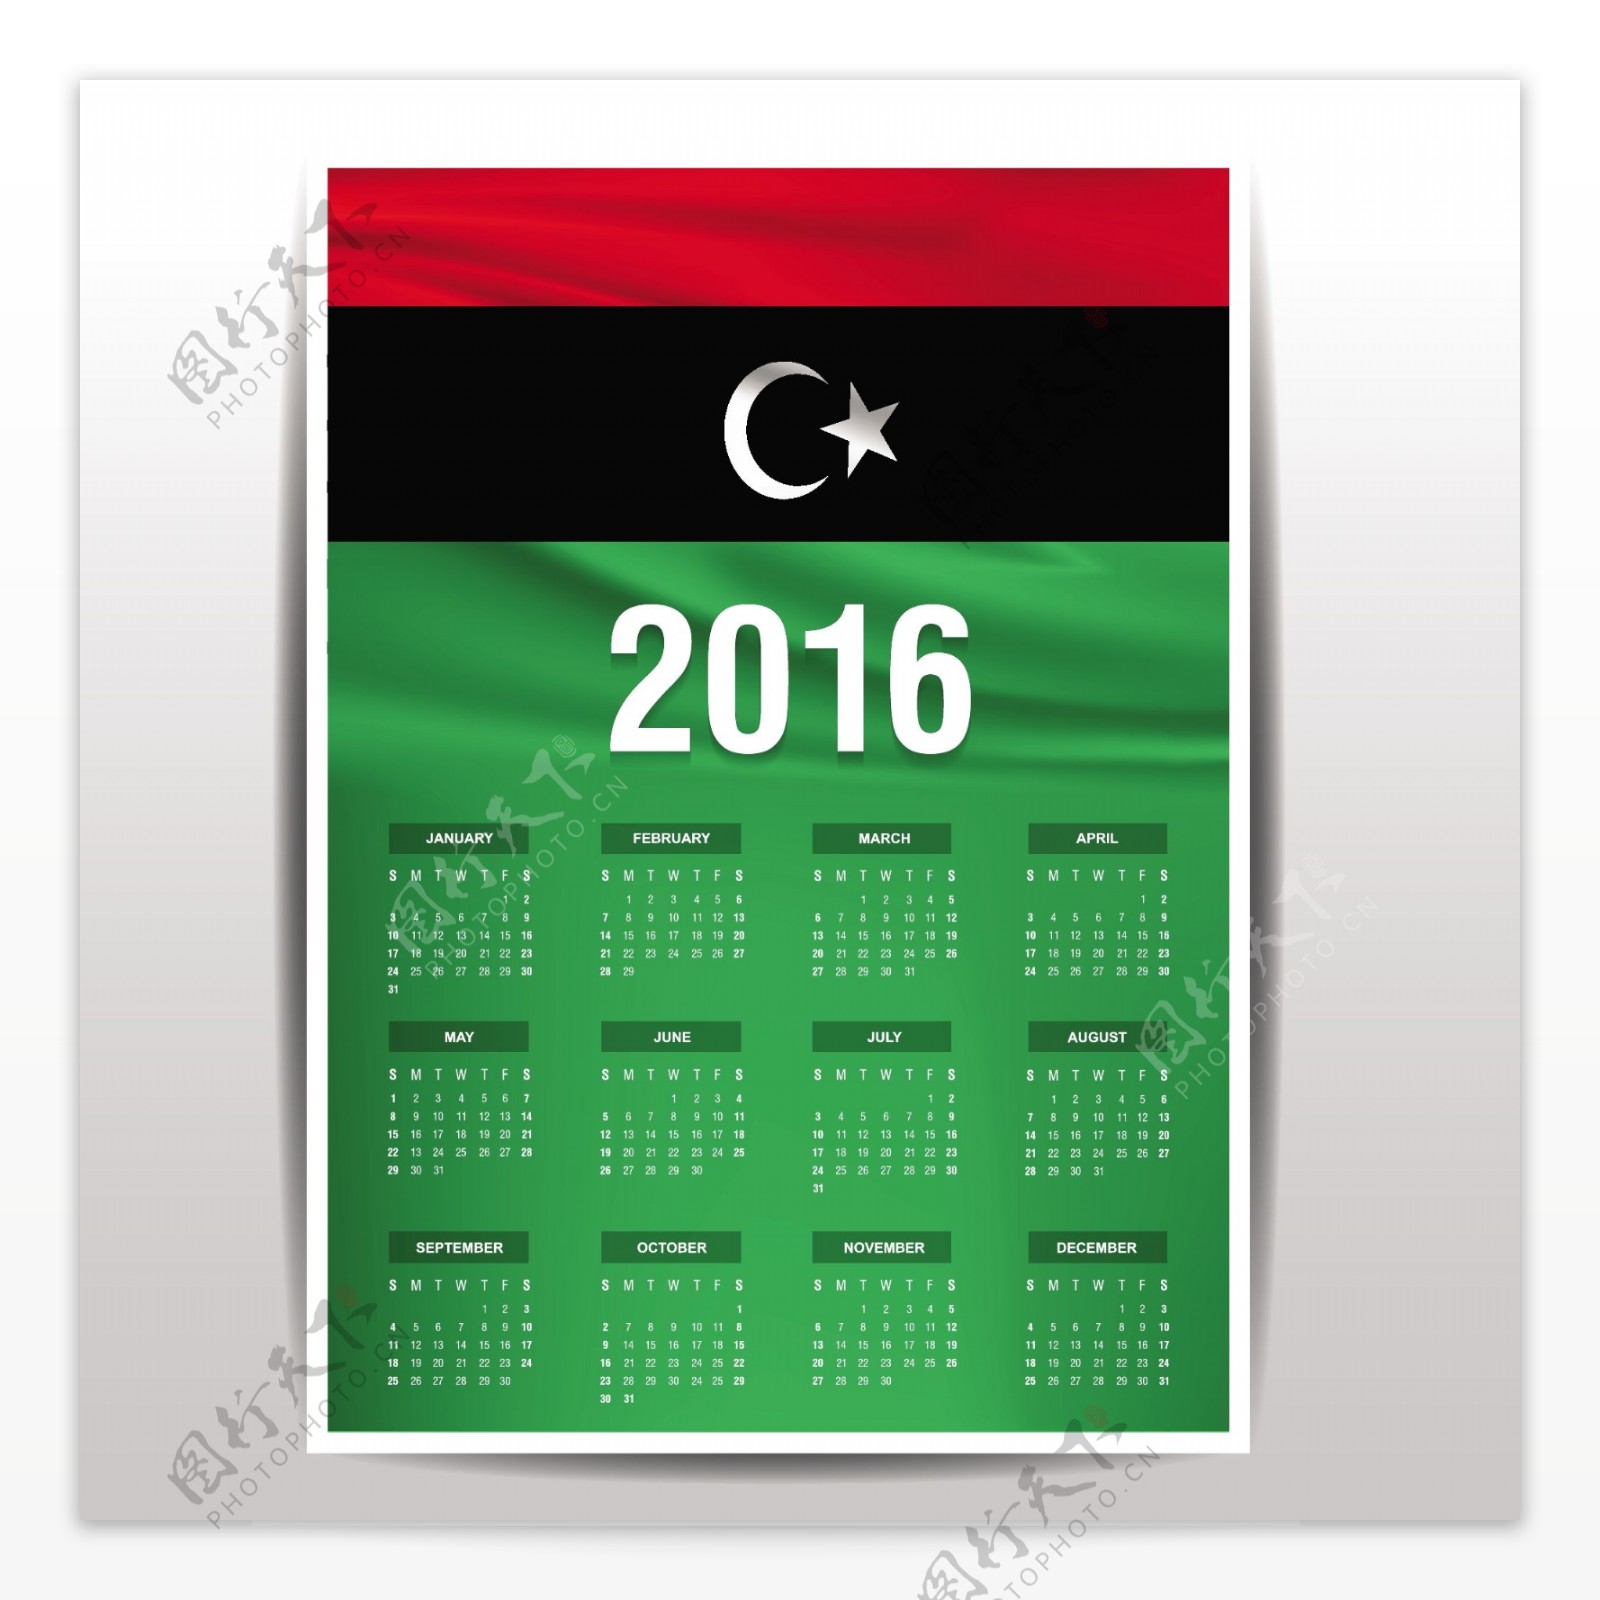 利比亚日历2016